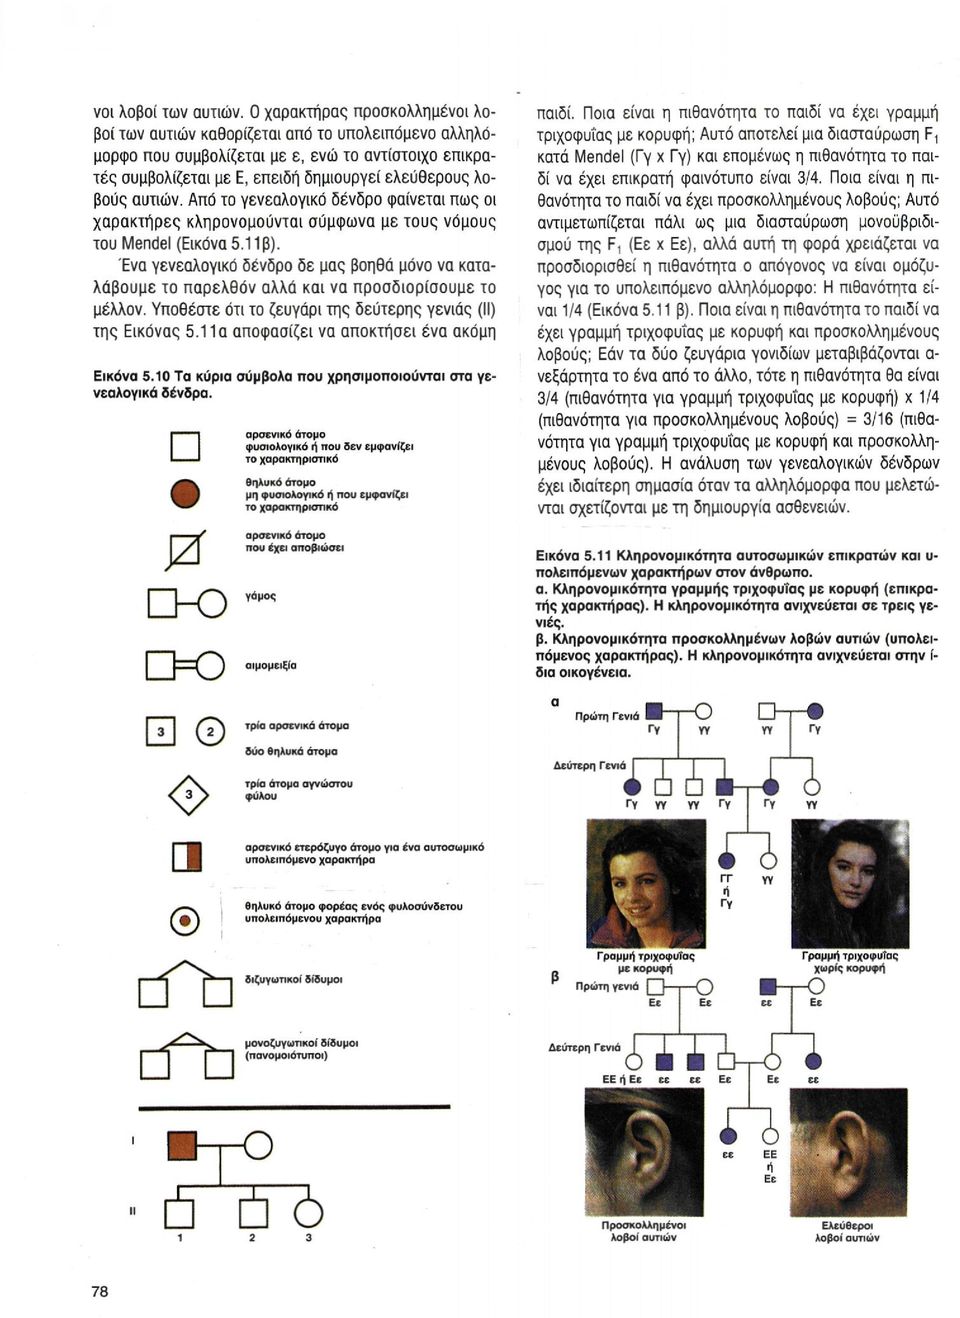 αυτιών. Από το γενεαλογικό δένδρο φαίνεται πως οι χαρακτήρες κληρονομούνται σύμφωνα με τους νόμους του Mendel (Εικόνα 5.11 β).